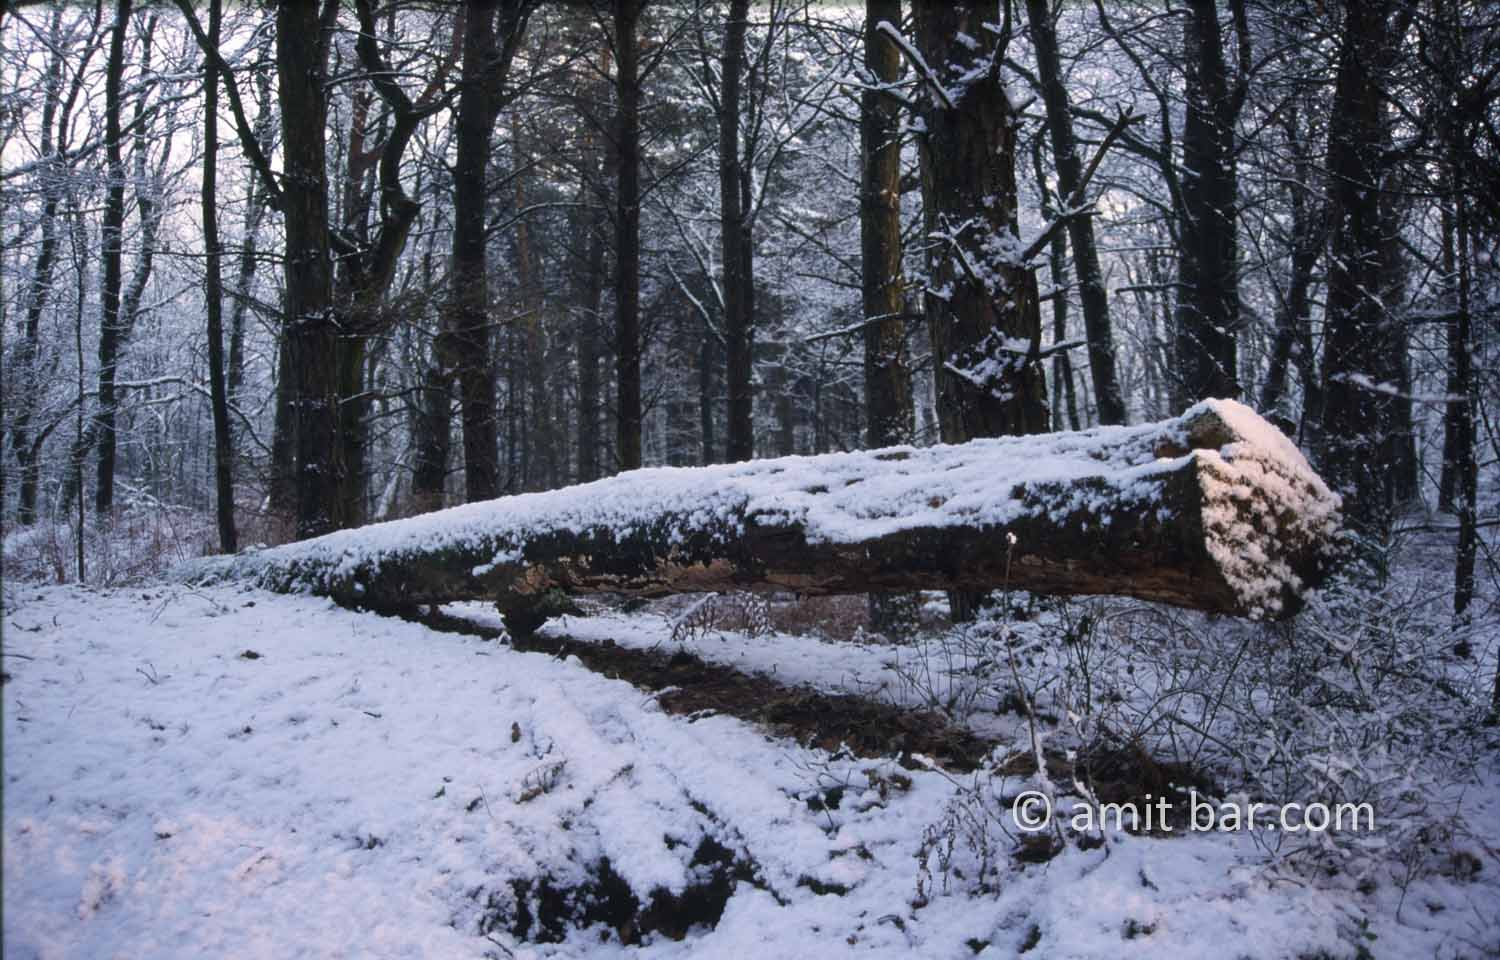 Broken tree II: A frozen landscape with a broken tree